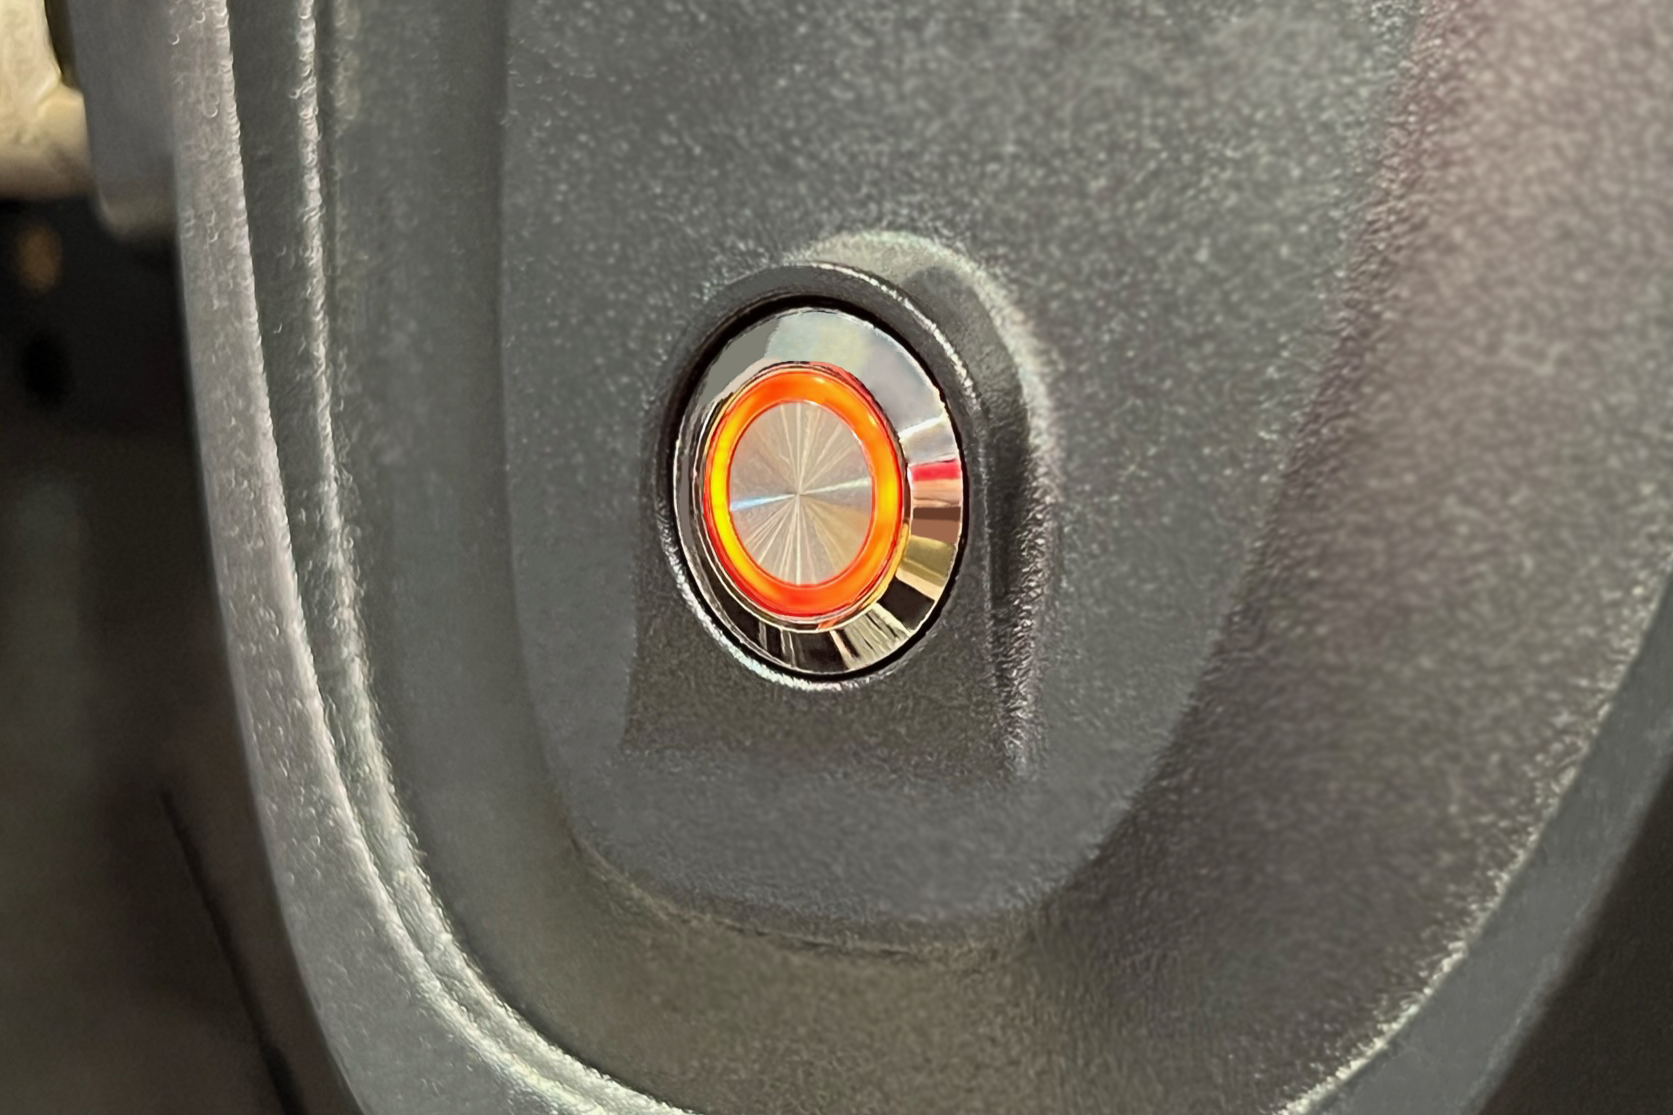 Silver Billet Button with Orange Illumination Installed